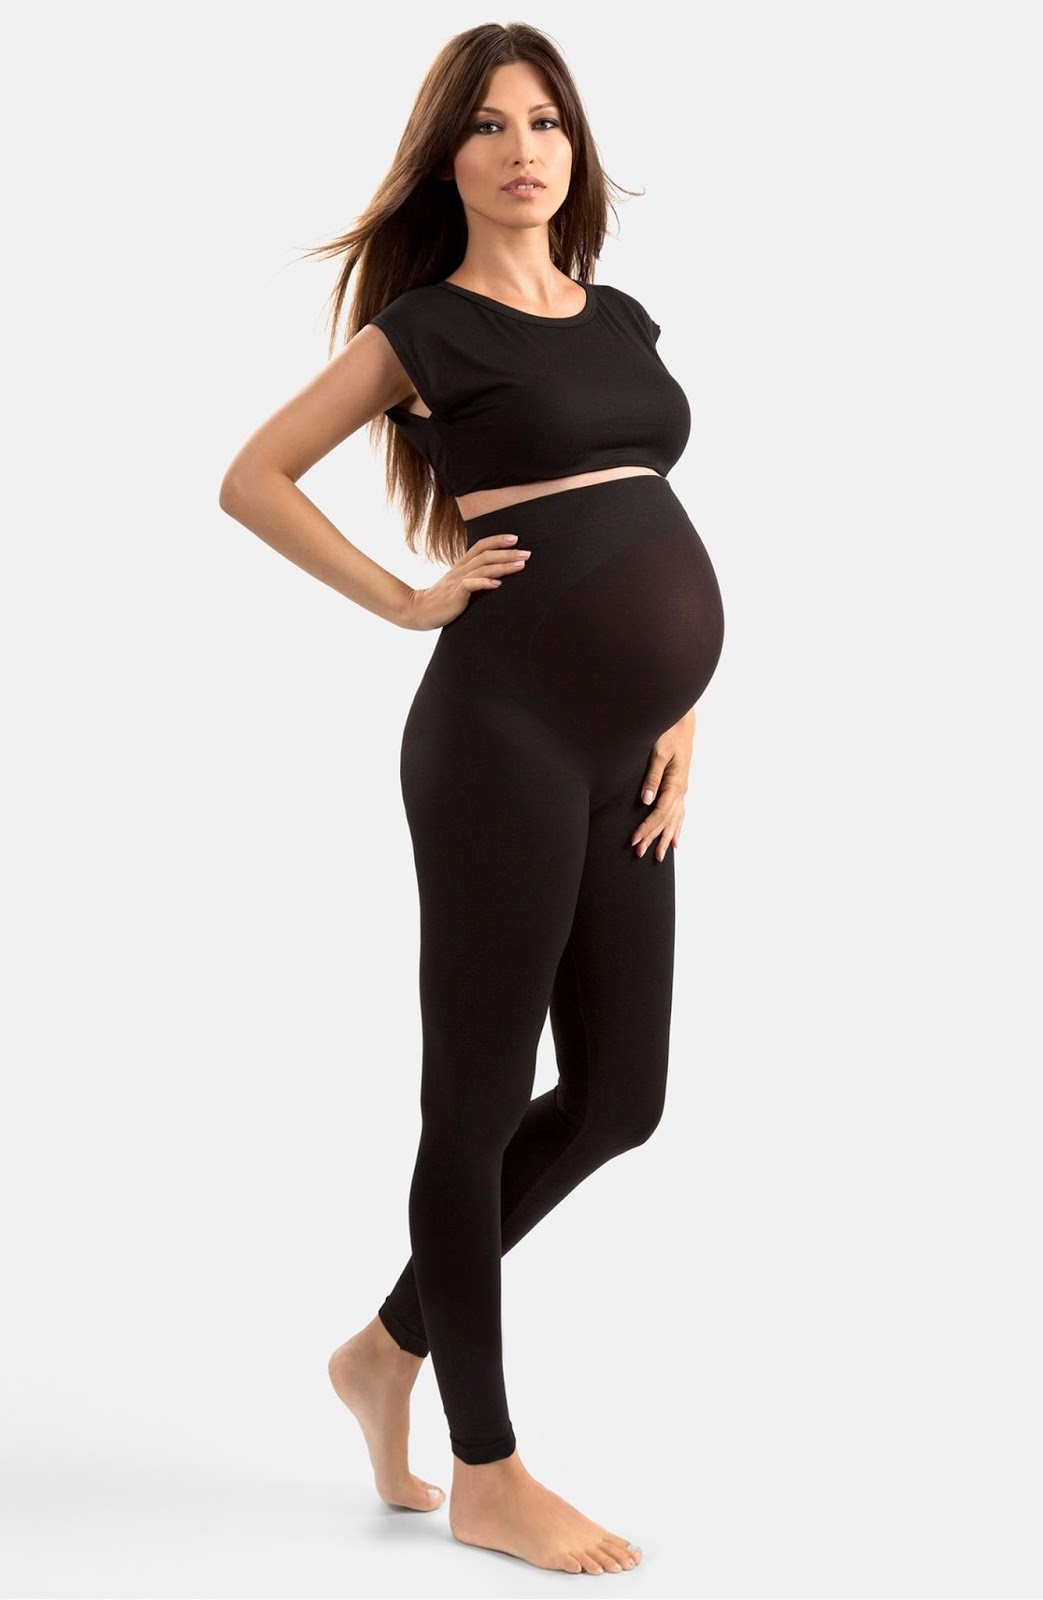 seraphine maternity underwear Model - MODEL ID [help] - Bellazon